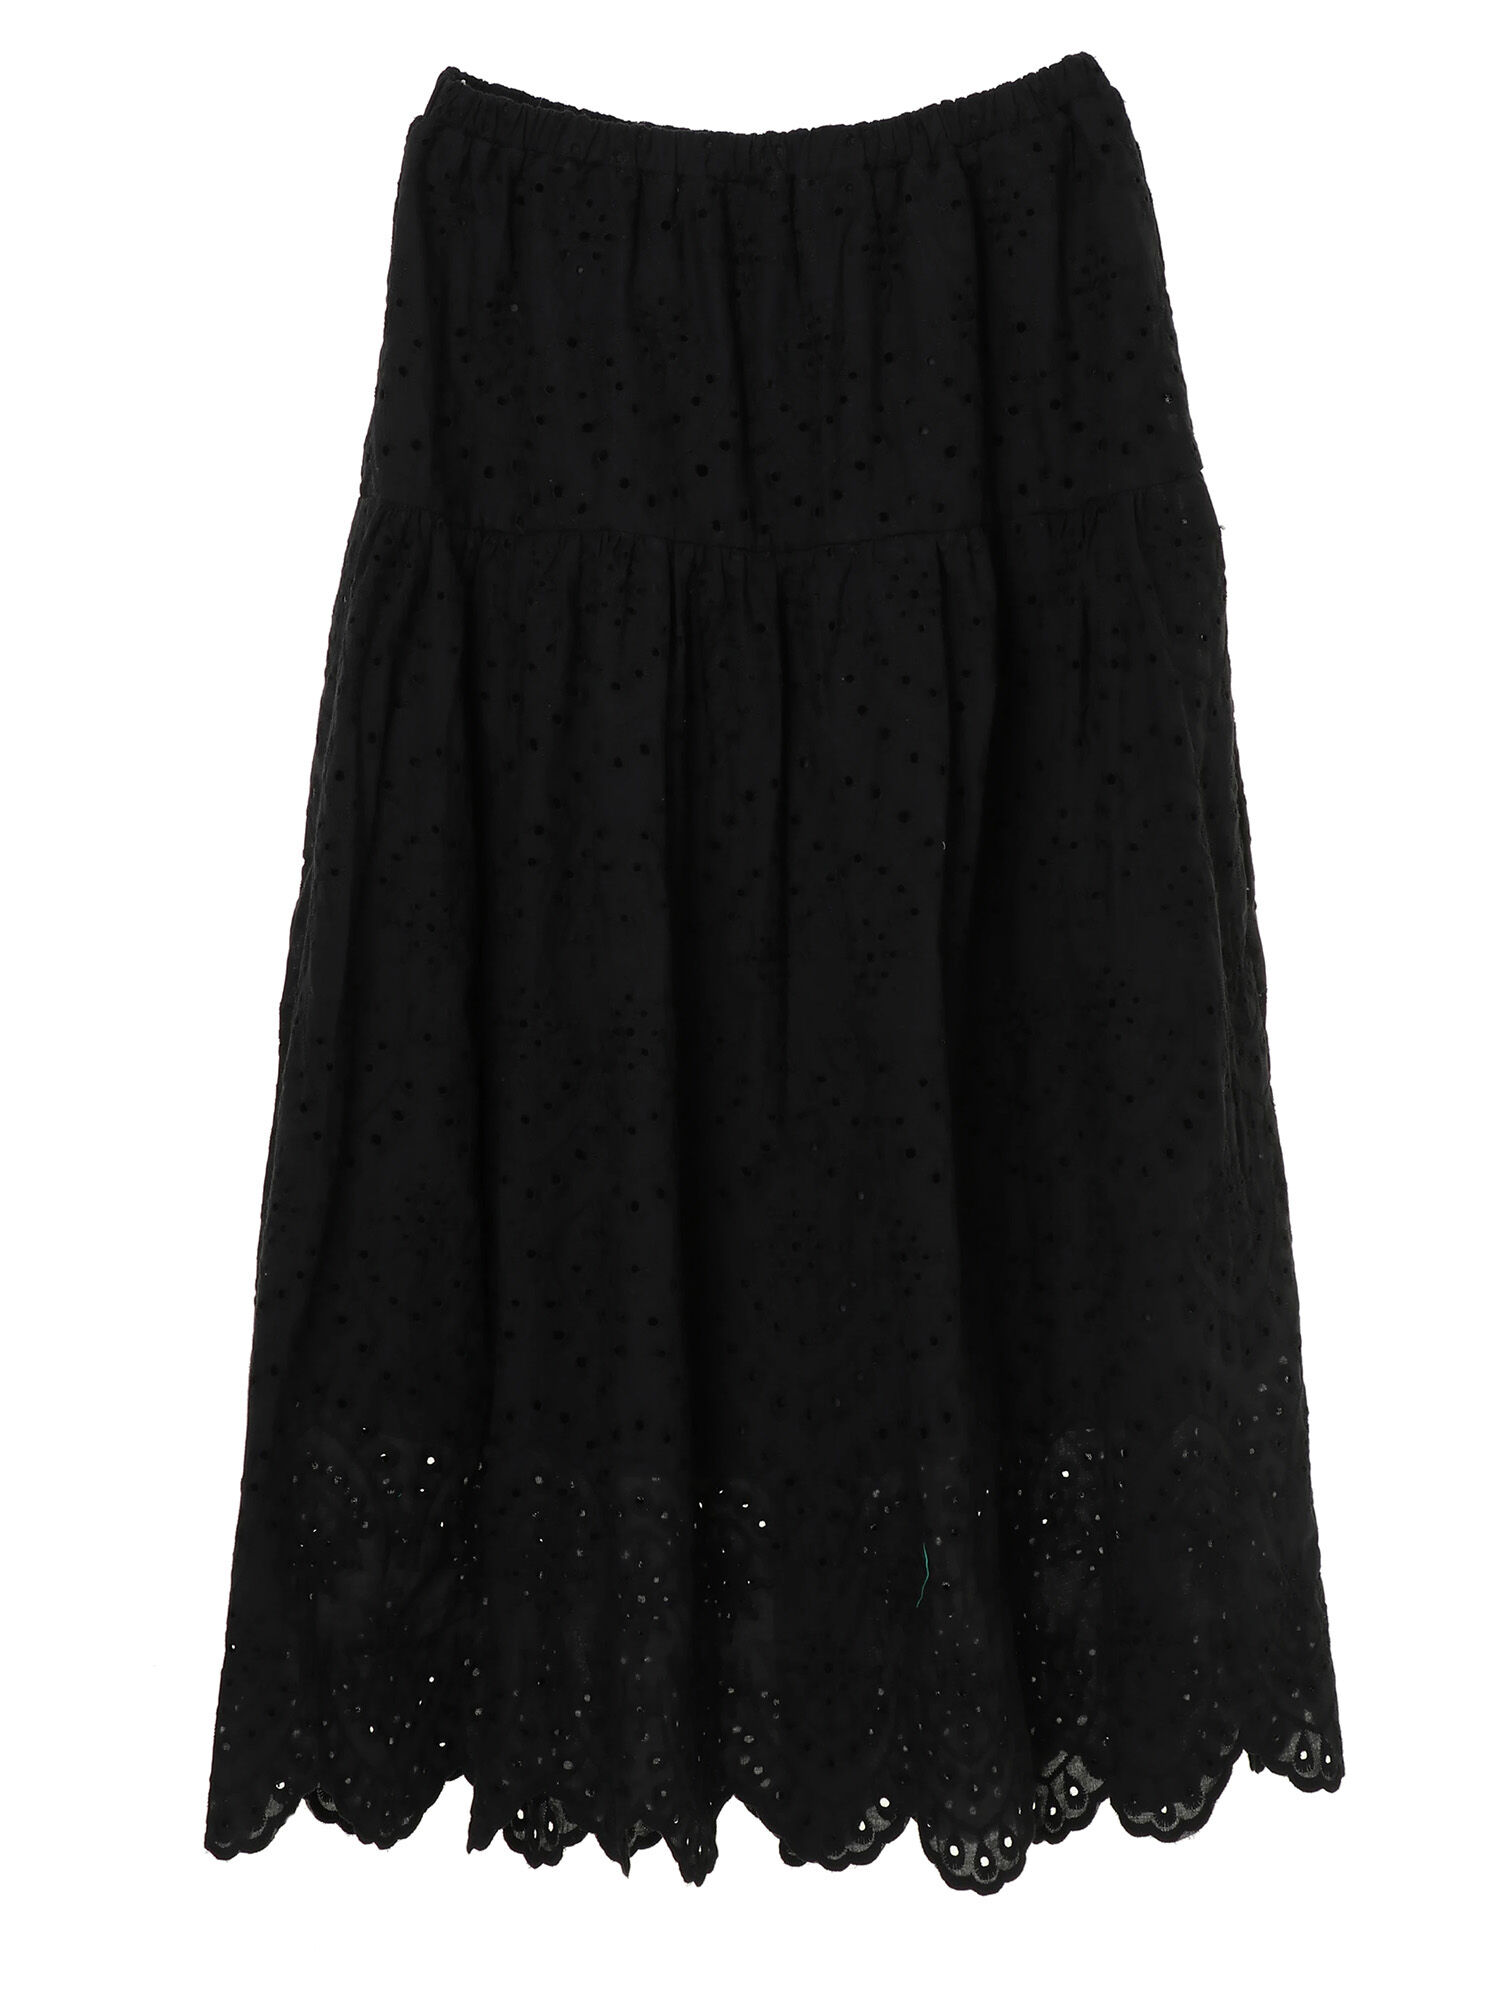 【1年保証】【値下げしました】tibiの刺繍入りの黒スカートレア‼ スカート